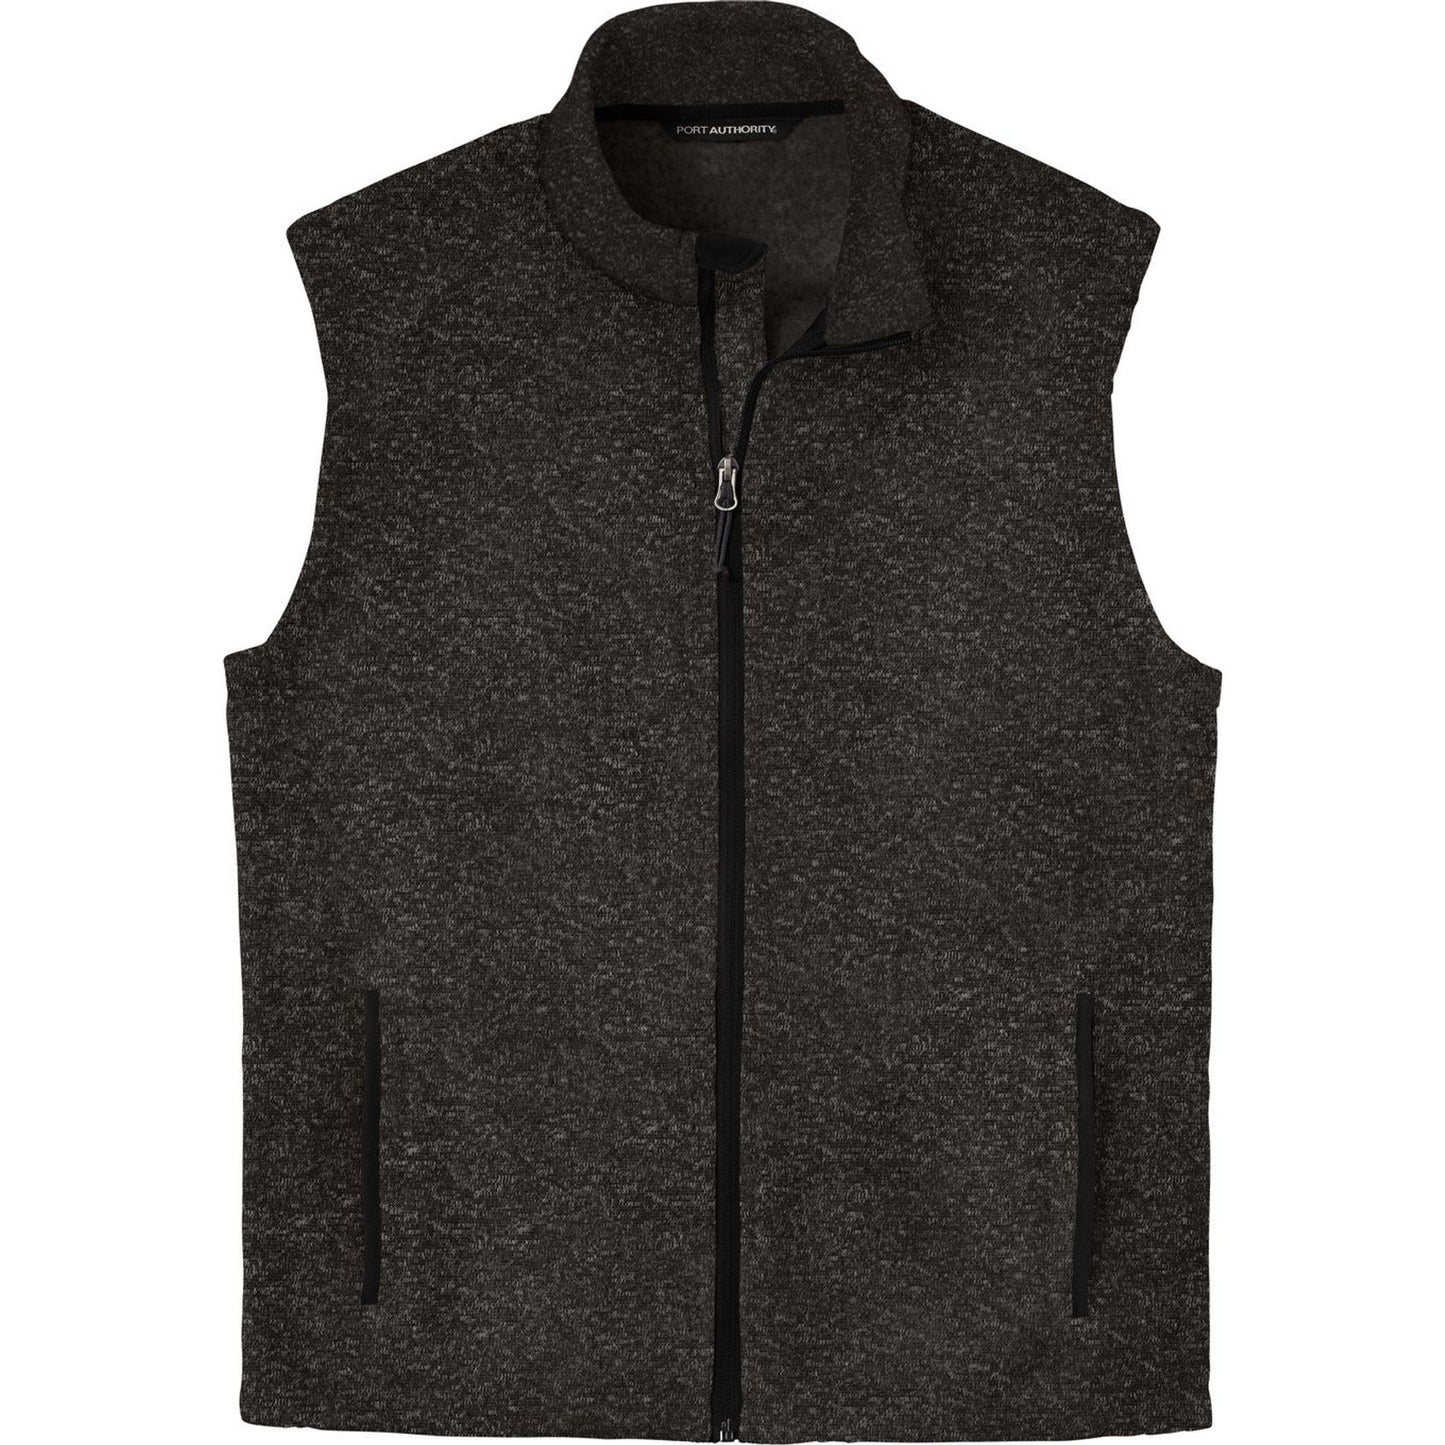 Port Authority ® Sweater Fleece Vest